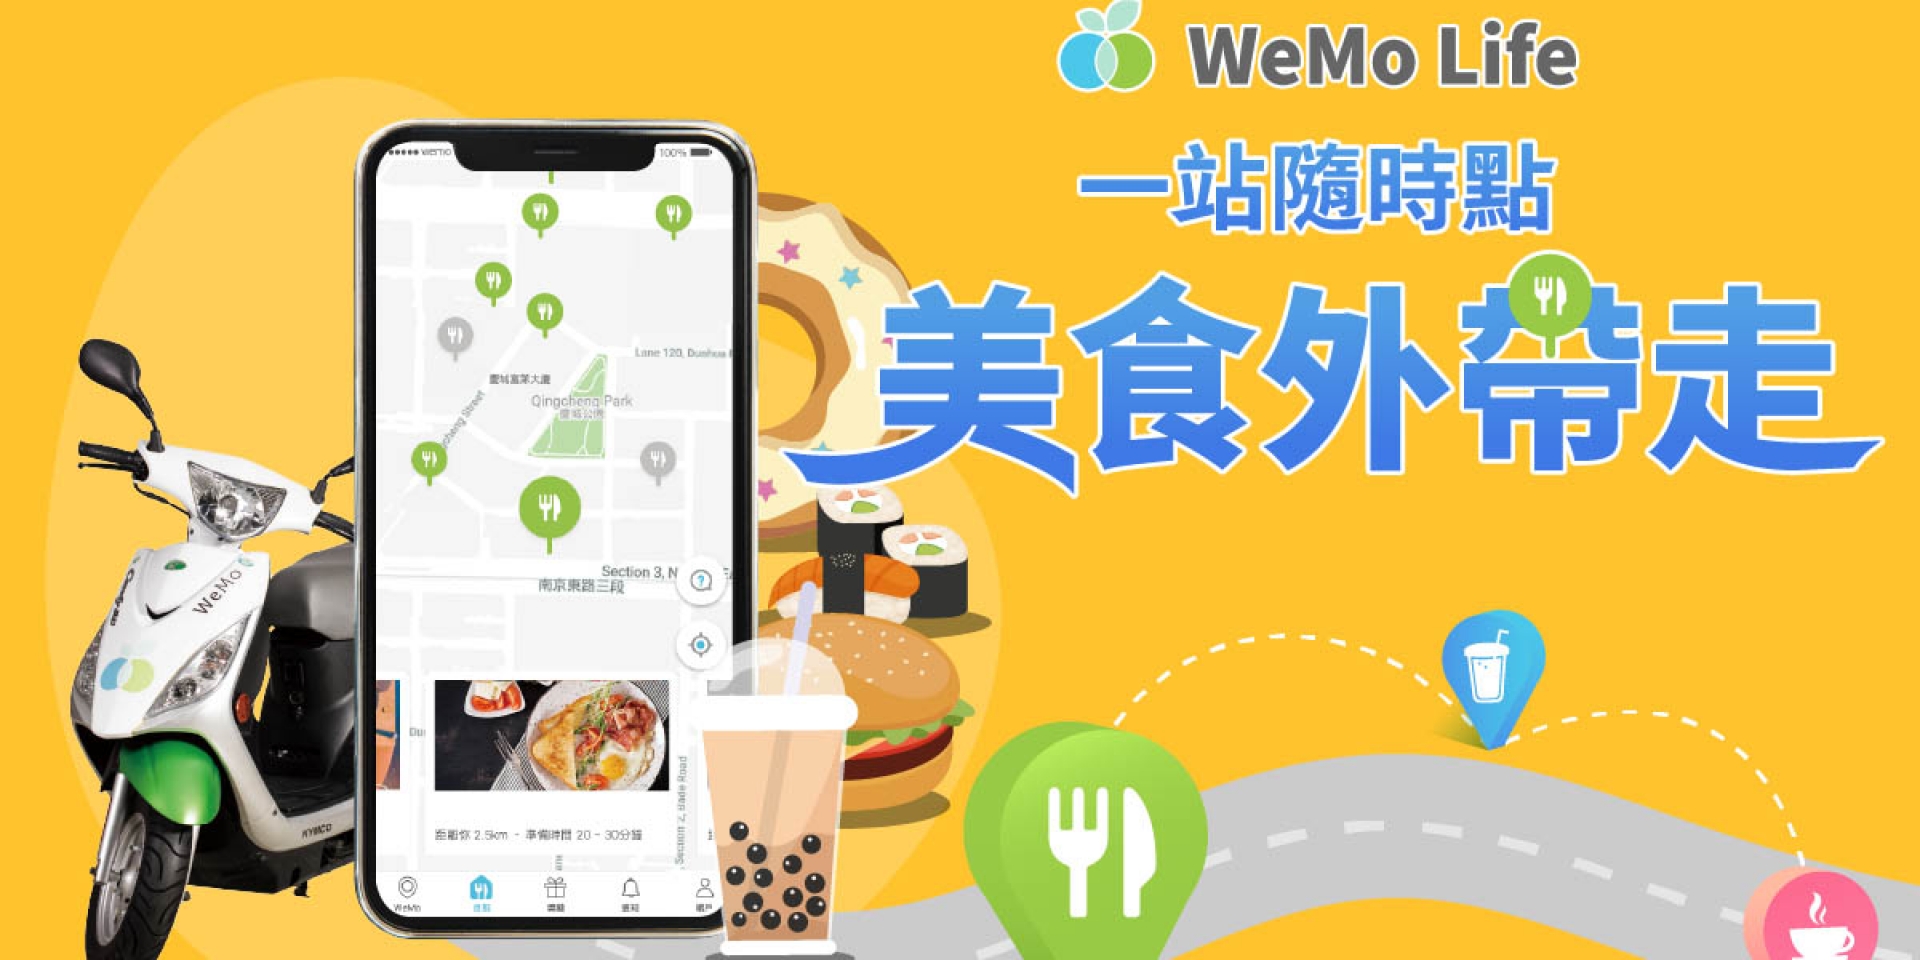 官方新聞稿。WeMo Scooter 再創新 「 WeMo 美食自取」全新服務登場